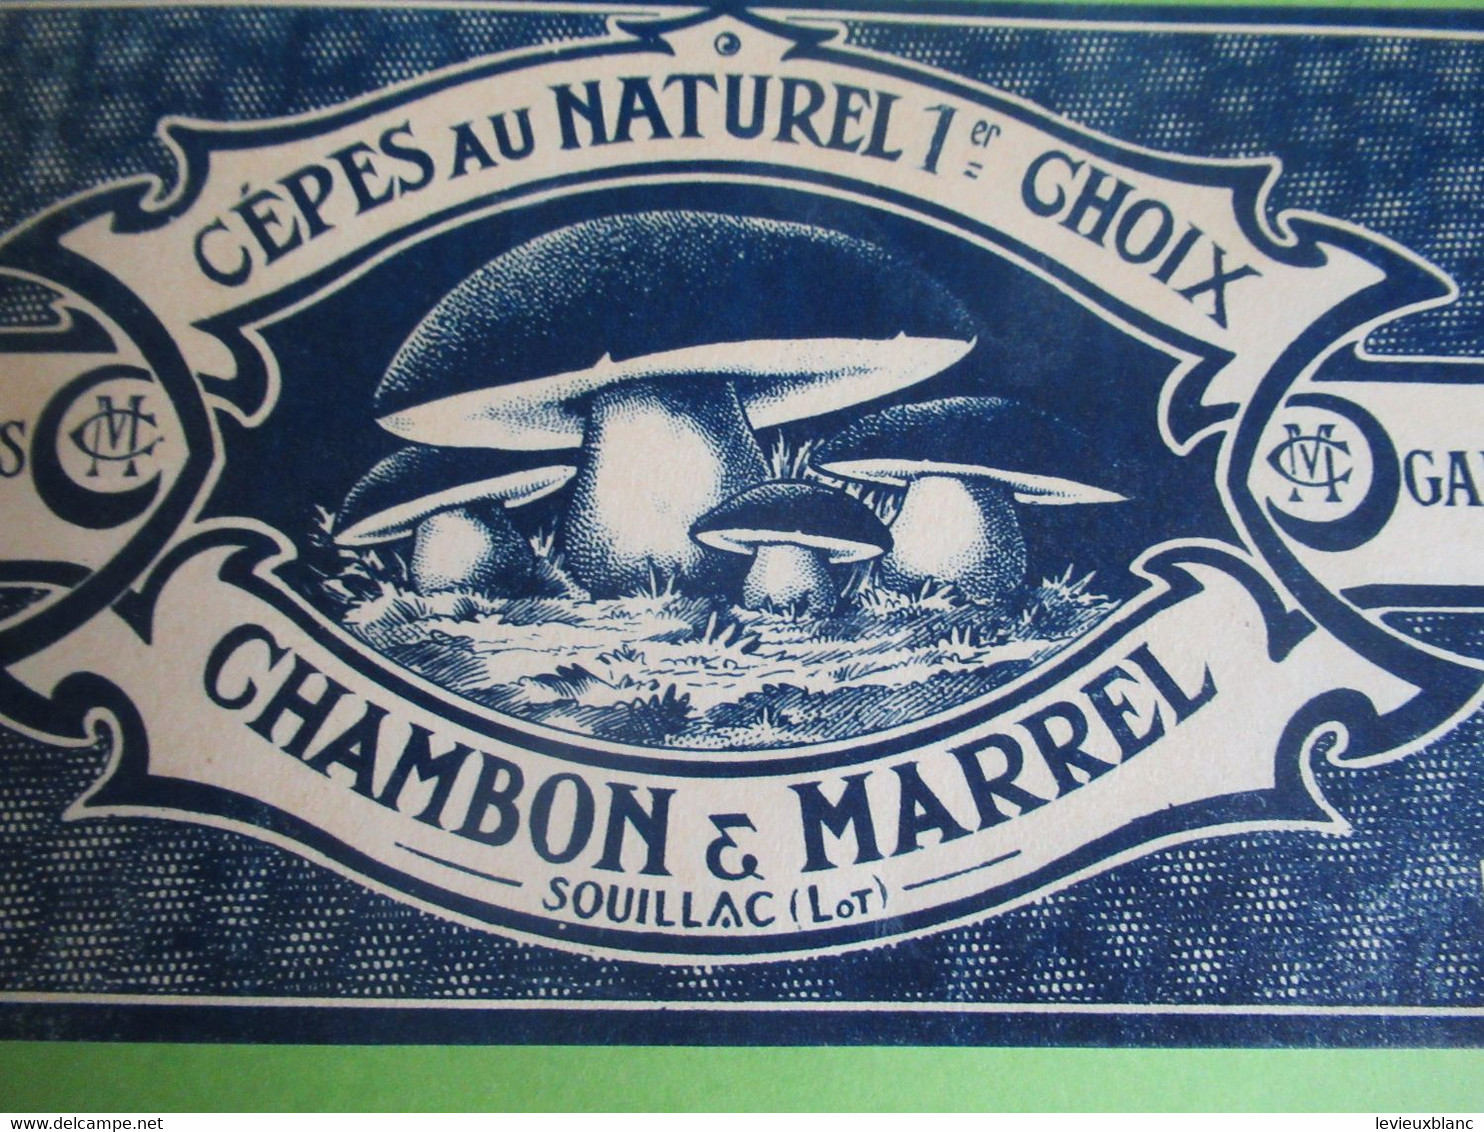 Etiquette Conserve/Cèpes Au Naturel 1er Choix/CHAMBON & MARREL/SOUILLAC ( Lot ) / Début XX                  ETIQ182 - Frutta E Verdura